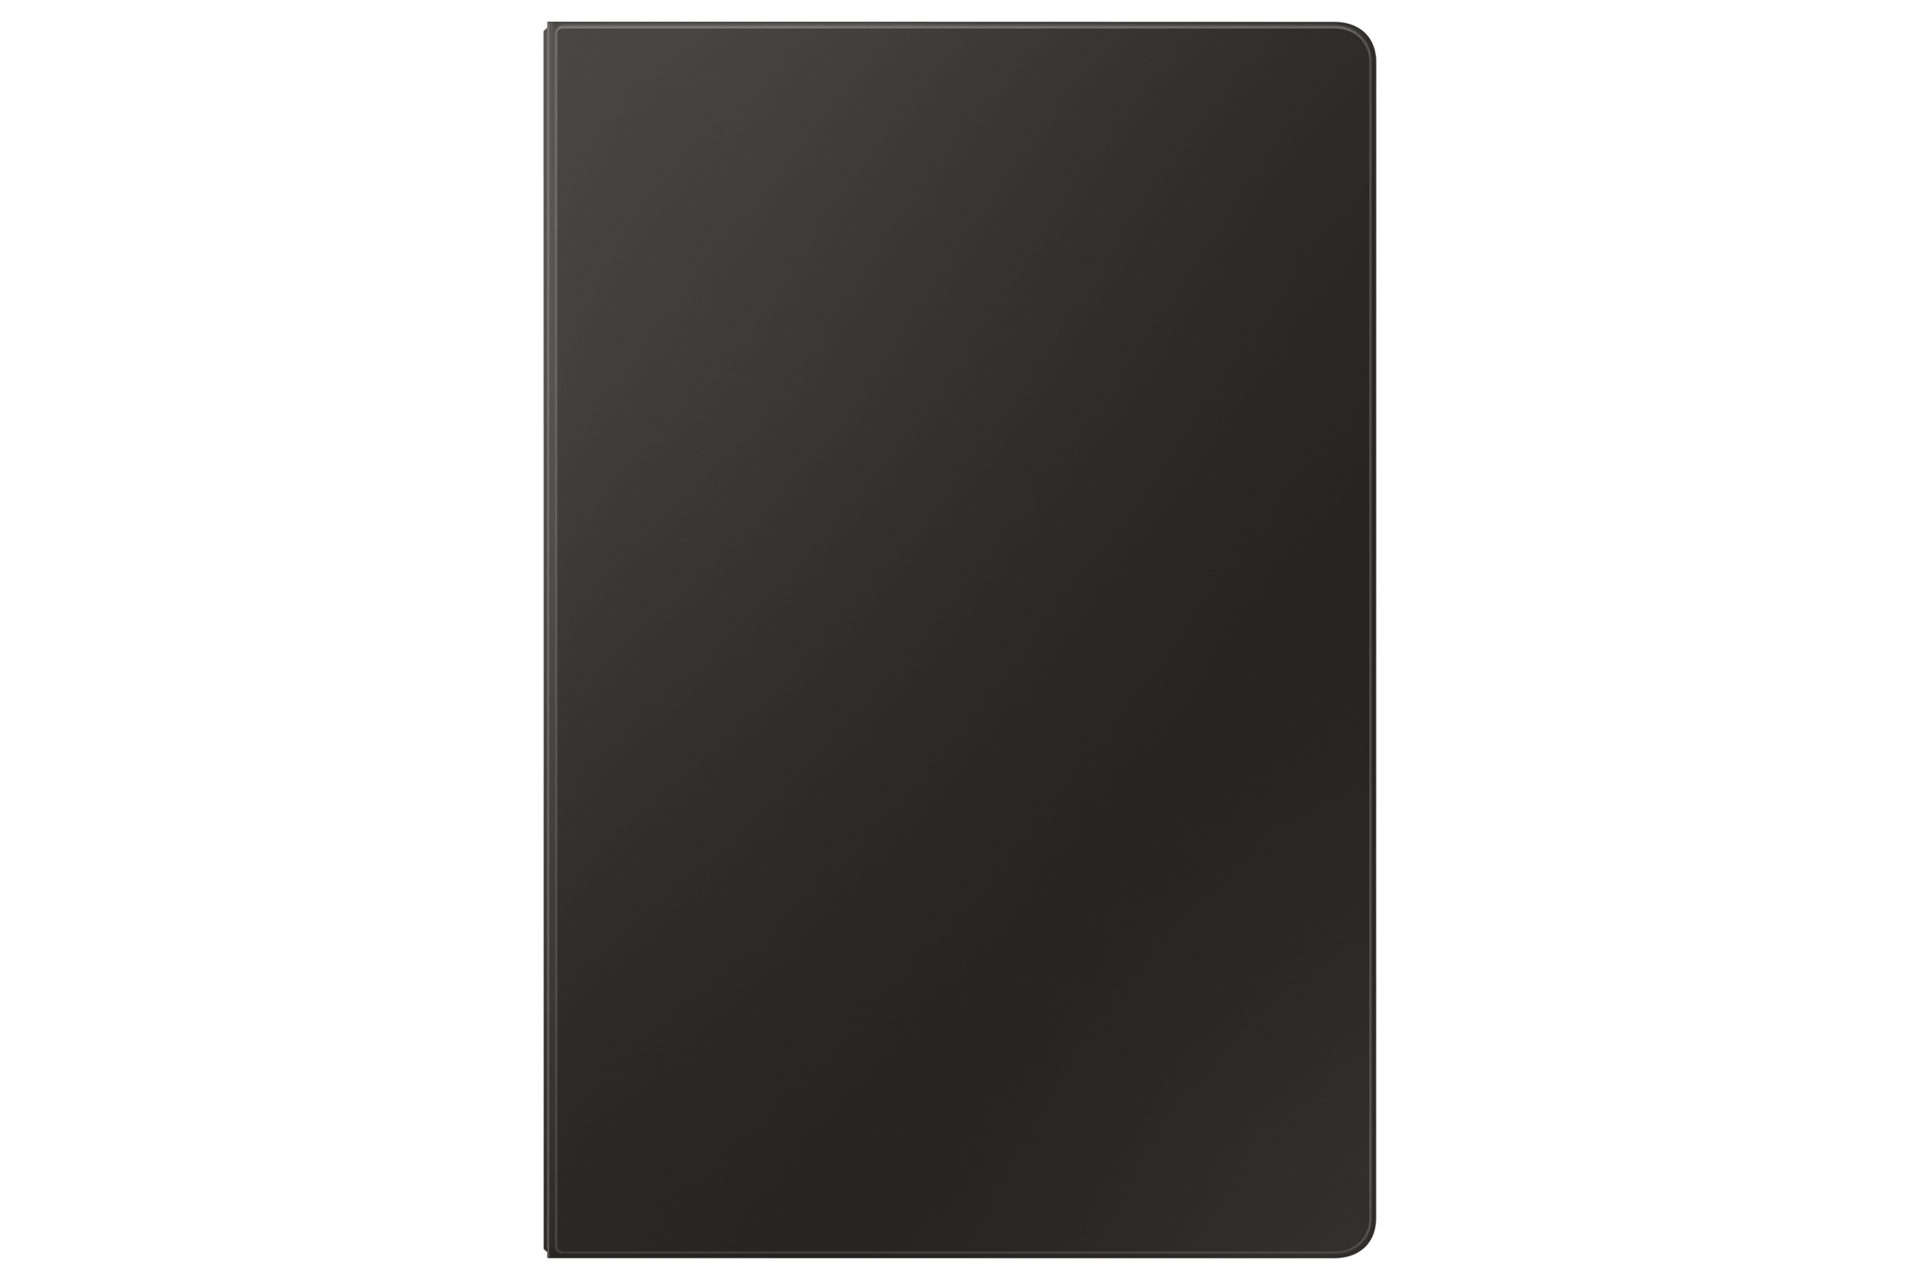 갤럭시 탭 S9+ 키보드 북커버 (블랙) 제품에 갤럭시 탭을 장착한 후면 이미지